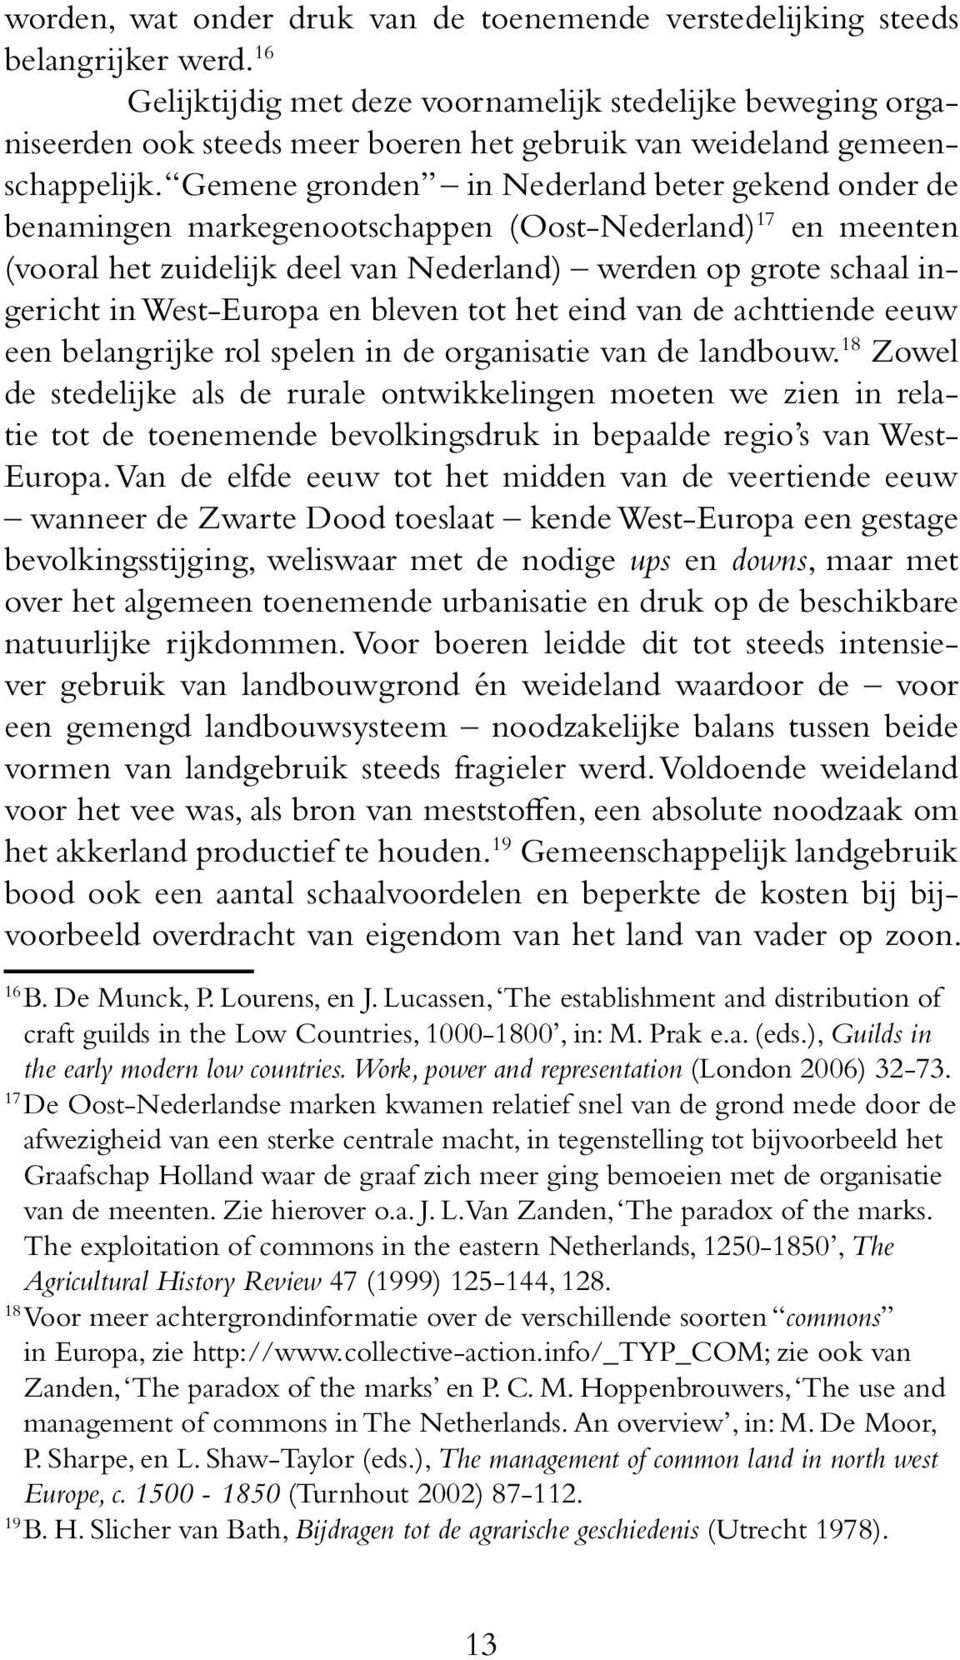 Gemene gronden in Nederland beter gekend onder de benamingen markegenootschappen (Oost-Nederland) 17 en meenten (vooral het zuidelijk deel van Nederland) werden op grote schaal ingericht in